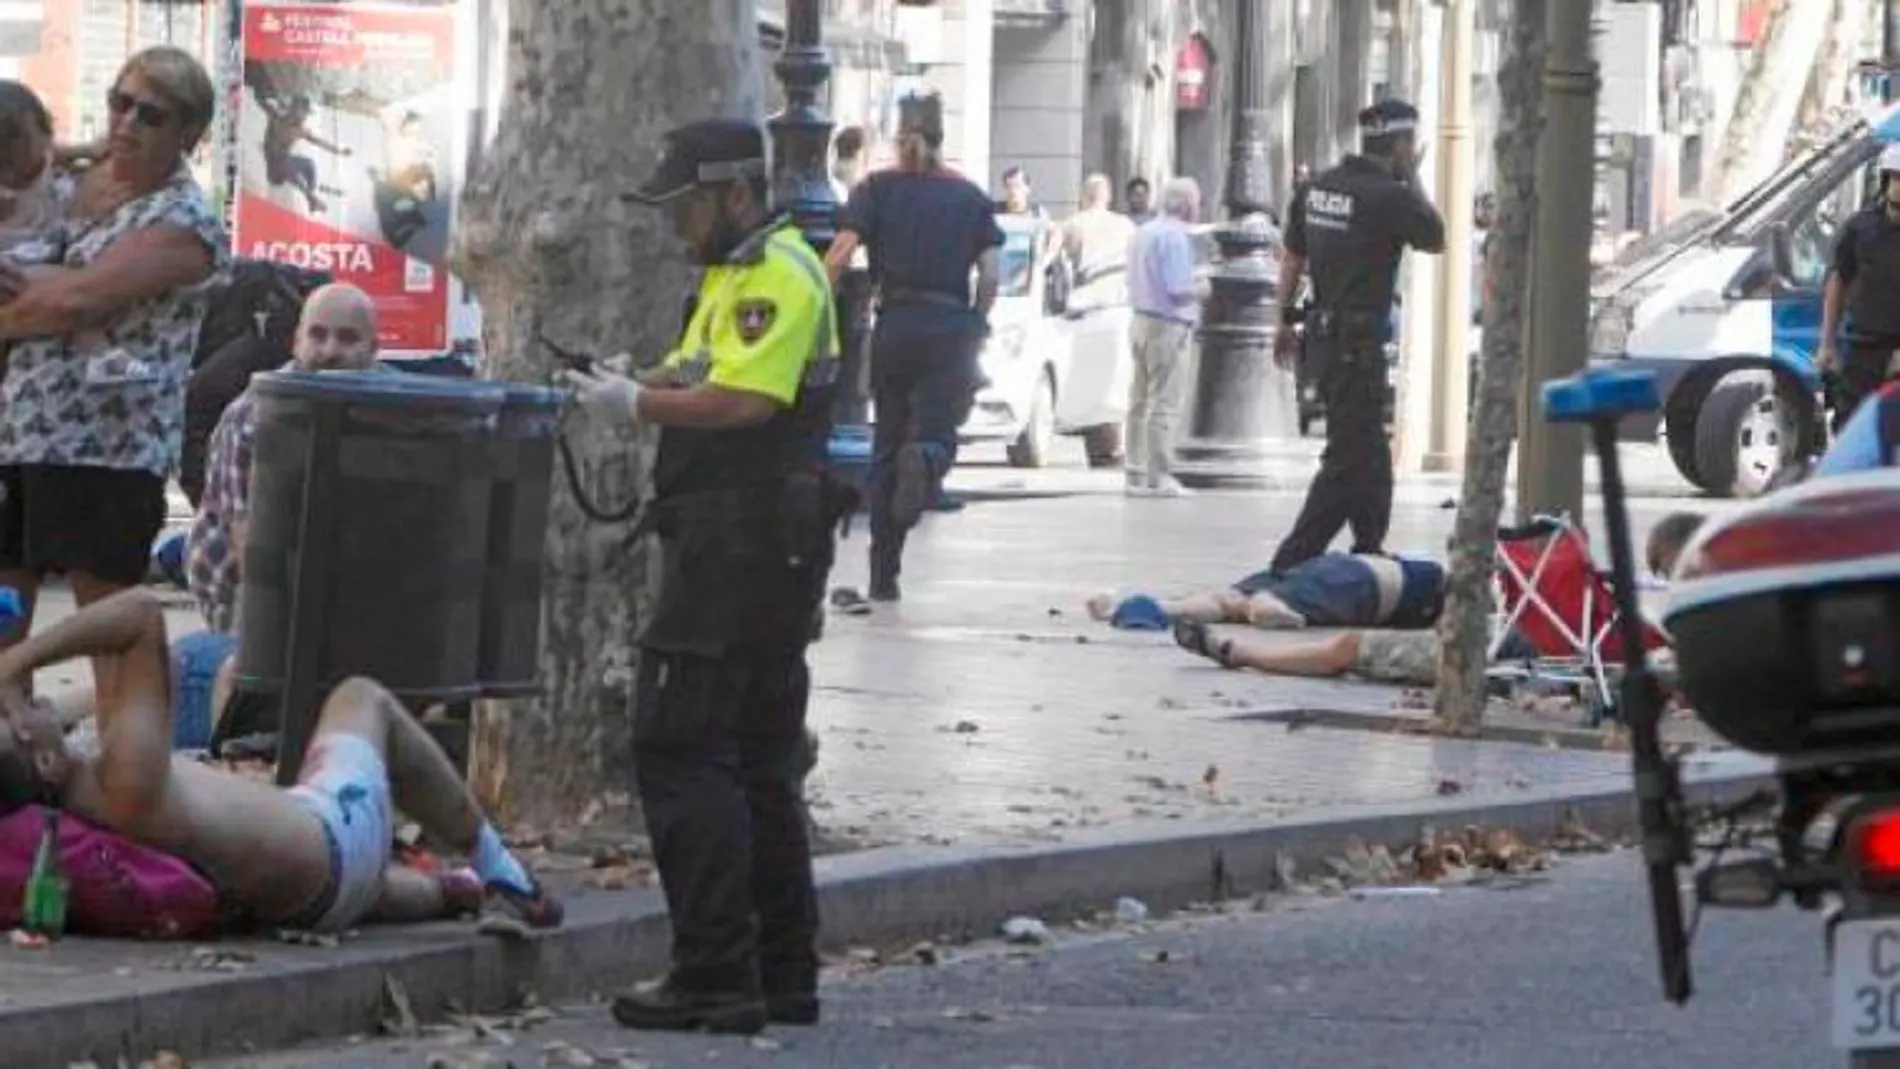 Imagen del día del atentado de Las Ramblas de Barcelona, el 17 de agosto de 2017